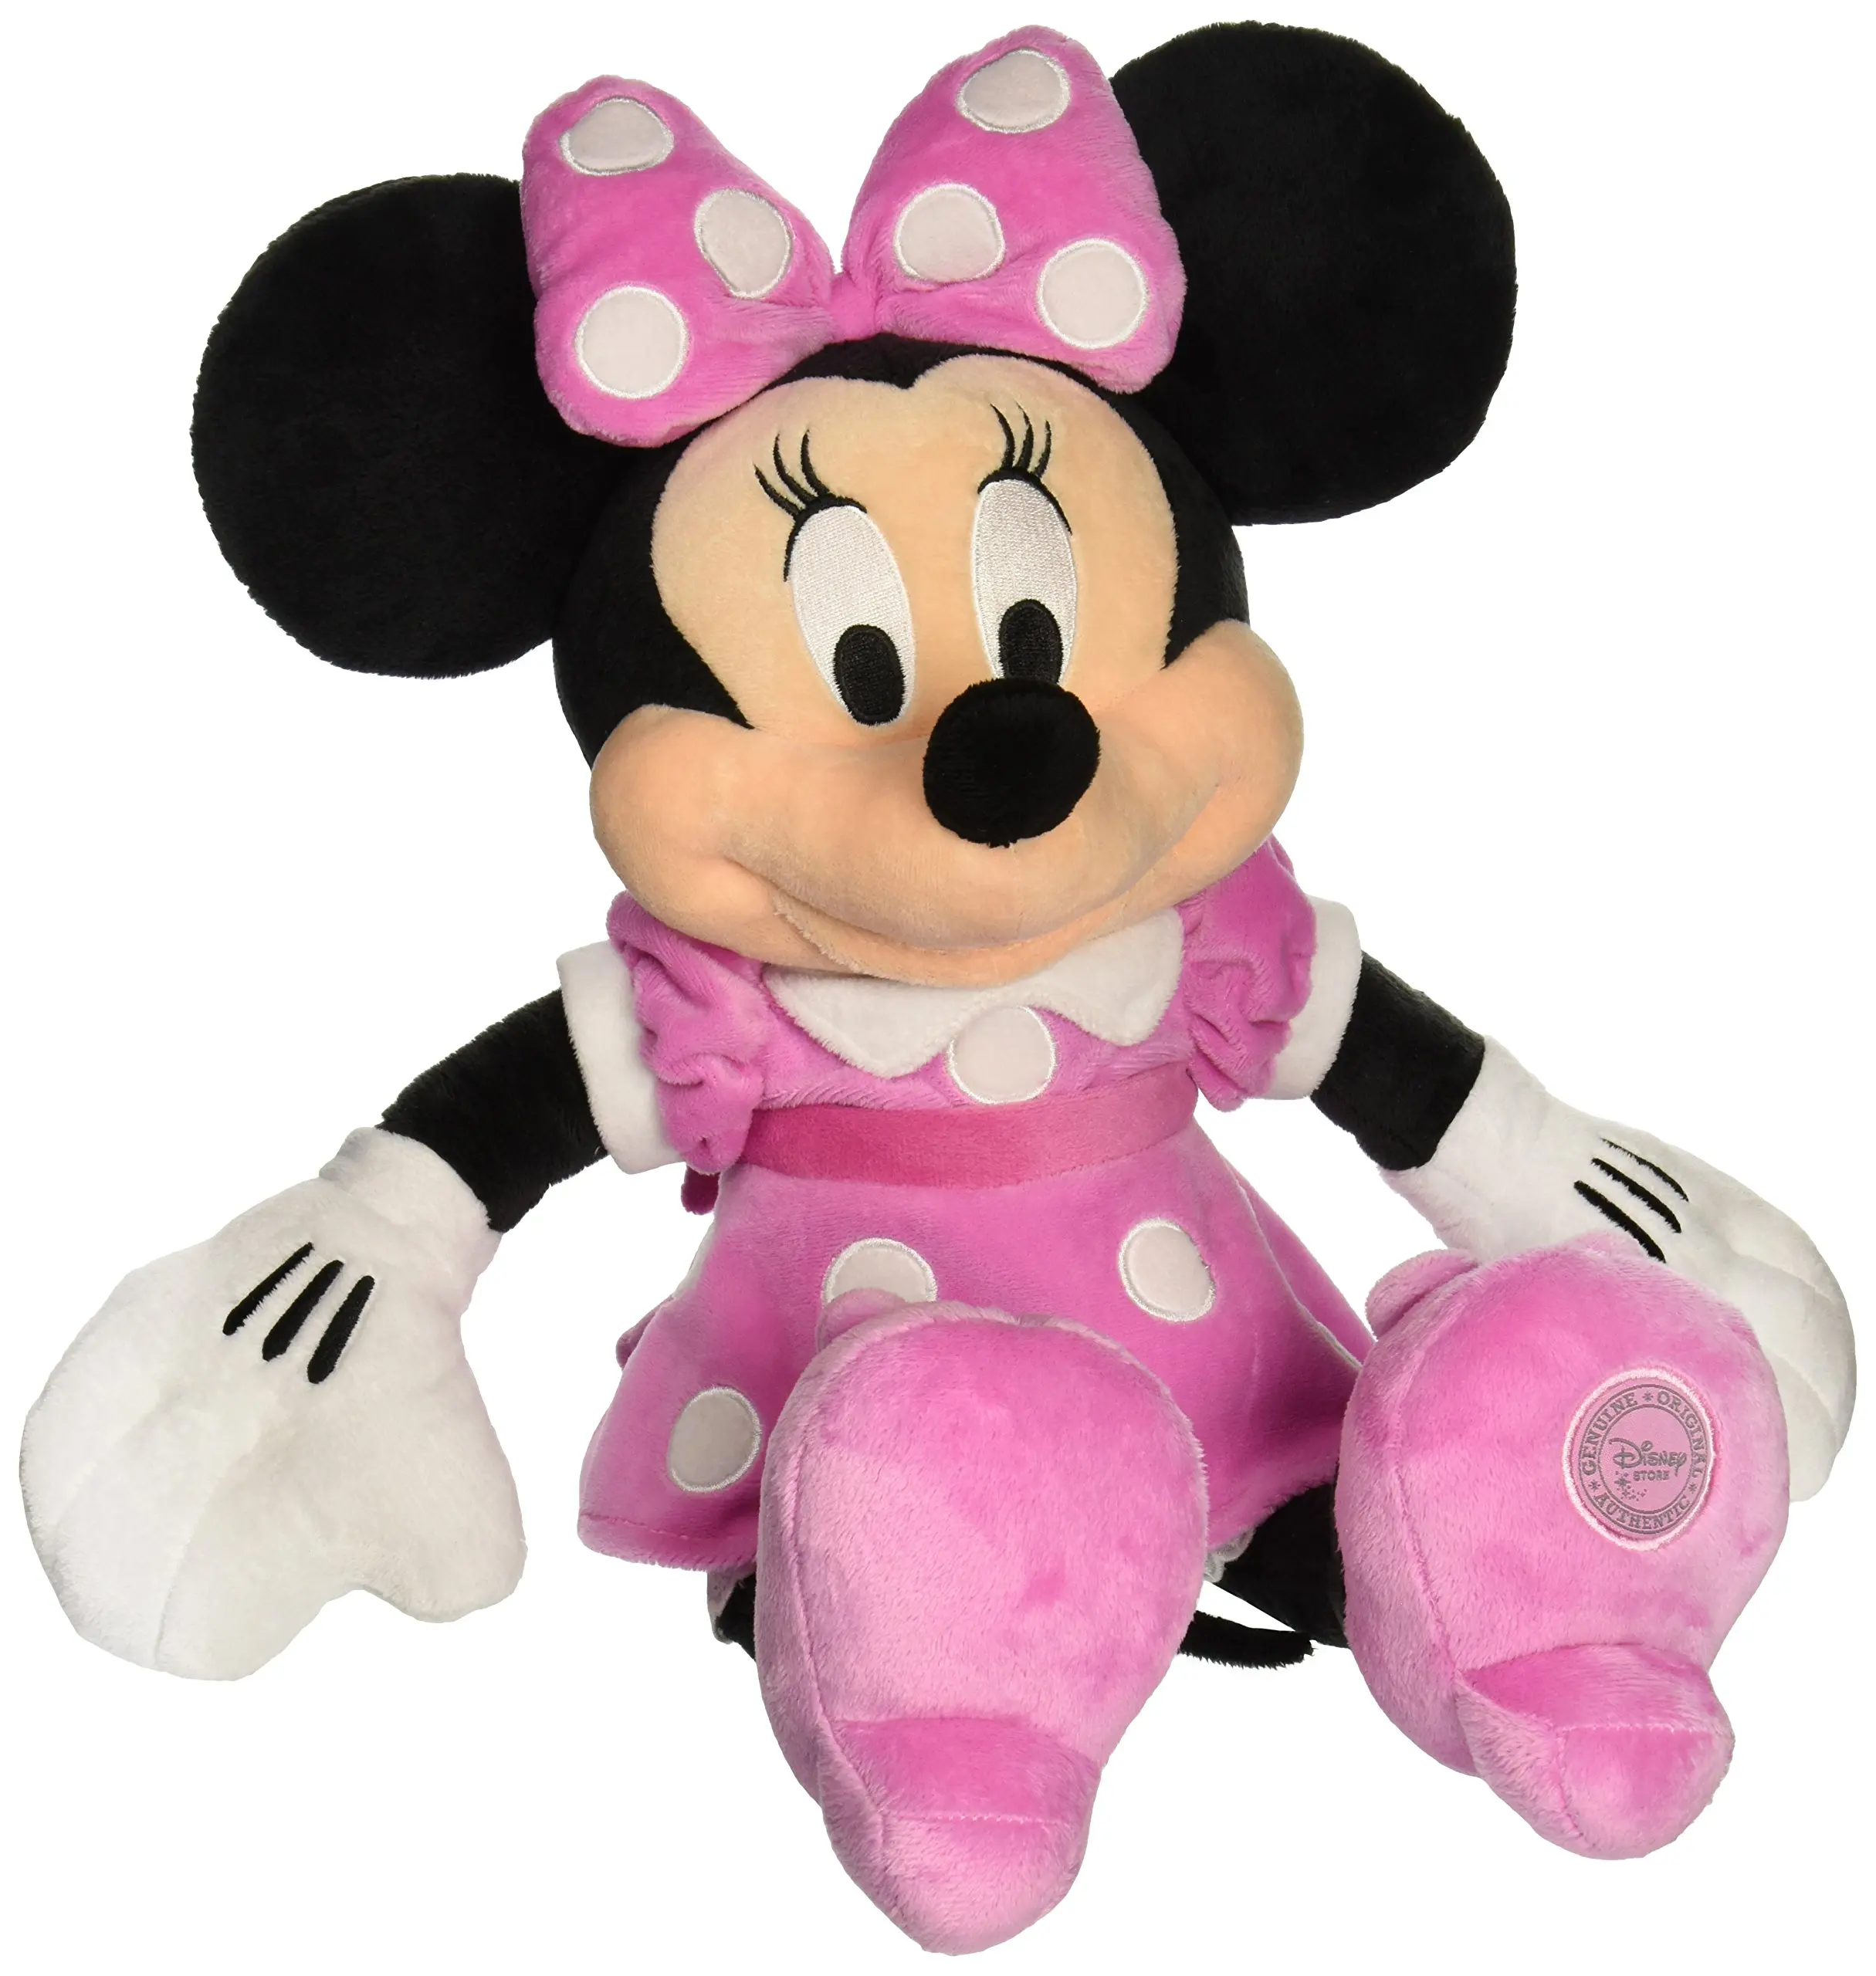 Игрушка минни. Minnie Mouse Disney игрушка. Мягкая игрушка 1 Toy Disney Танцующая Минни 34 см. Игрушка мягкая Минни Маус Minnie Mouse Velvet Plush 33 см. Микки Маус мягкая игрушка 90-х.